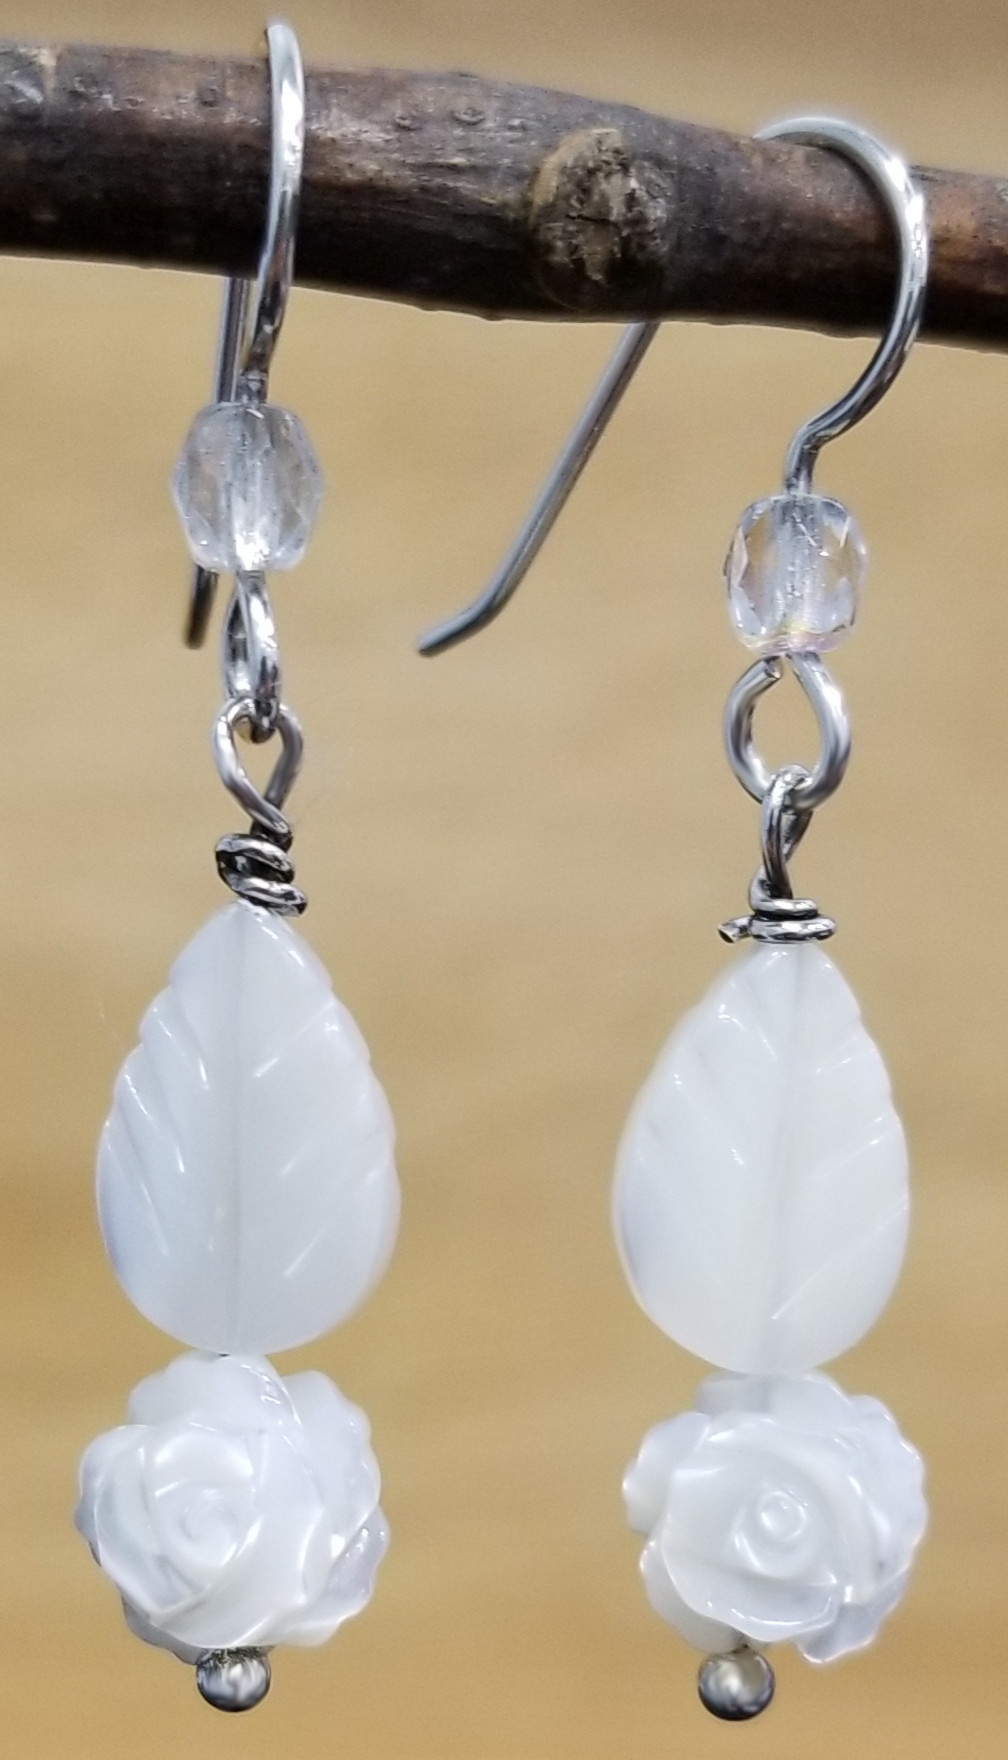 Gemstone Earrings,Long Earrings Amber and Pearl Earrings,Handmade Earrings 925 silver earrings hooks